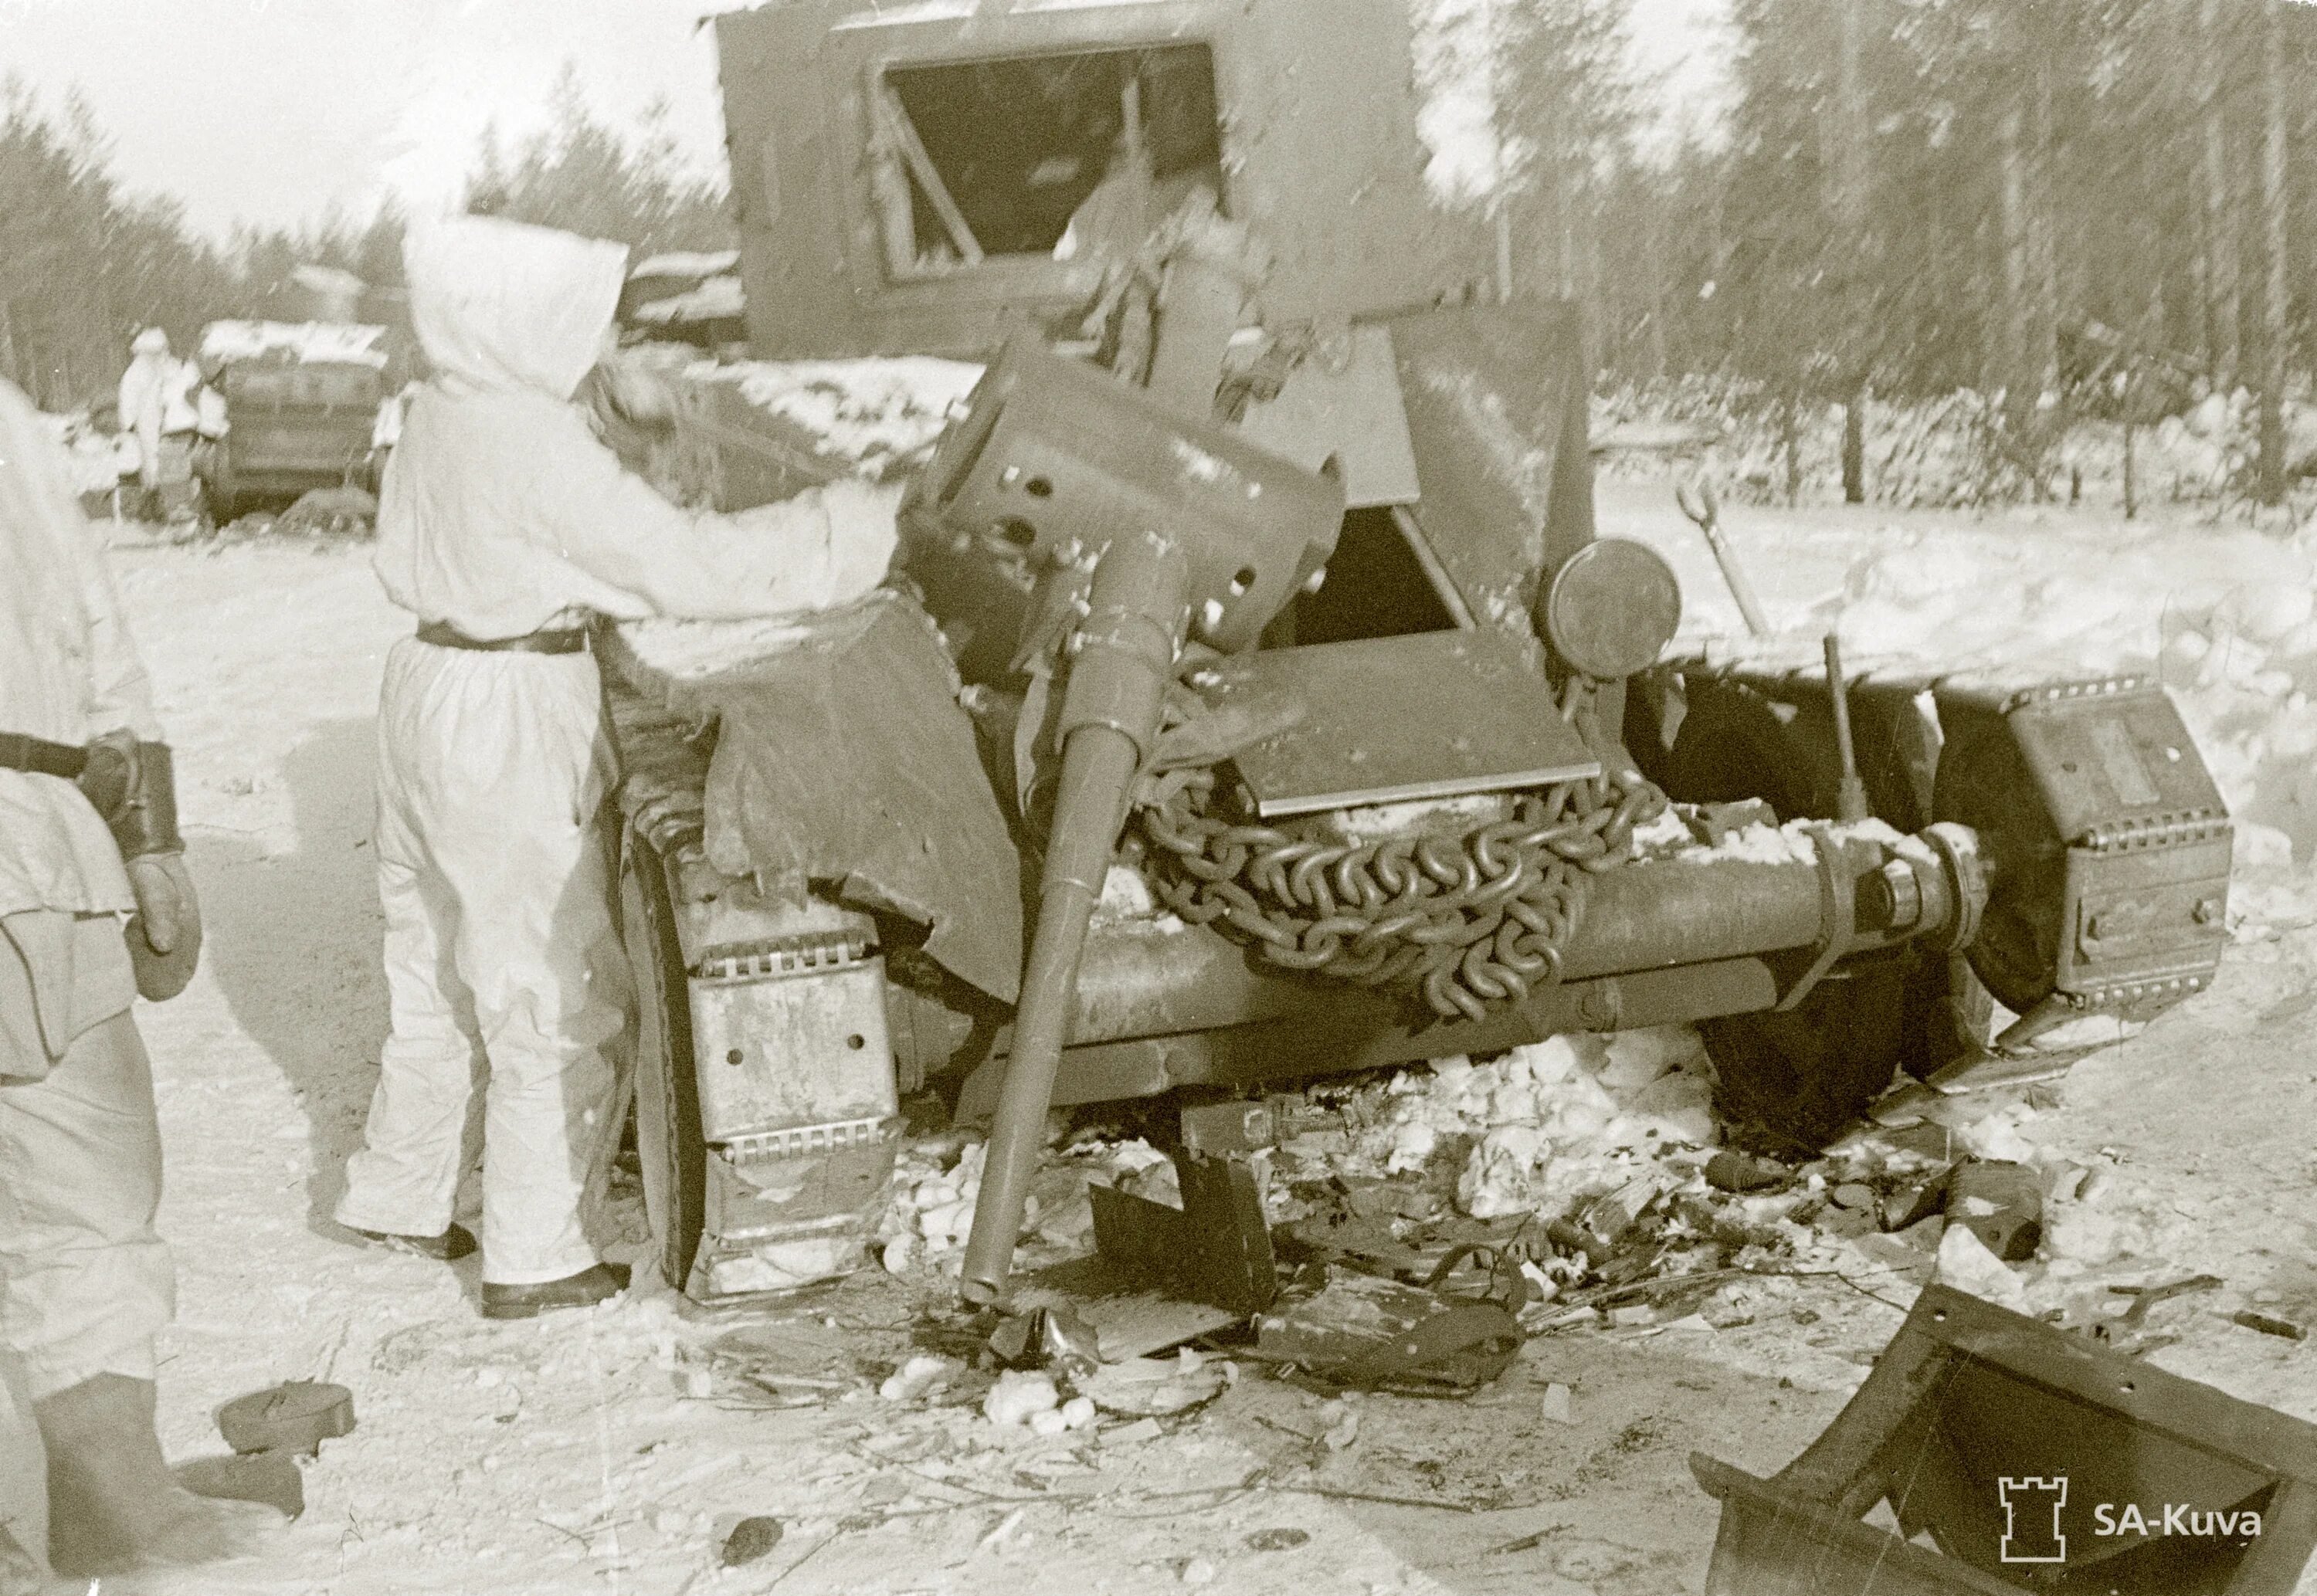 Ссср против финляндии 1939. Советские солдаты Суомуссалми 1940.